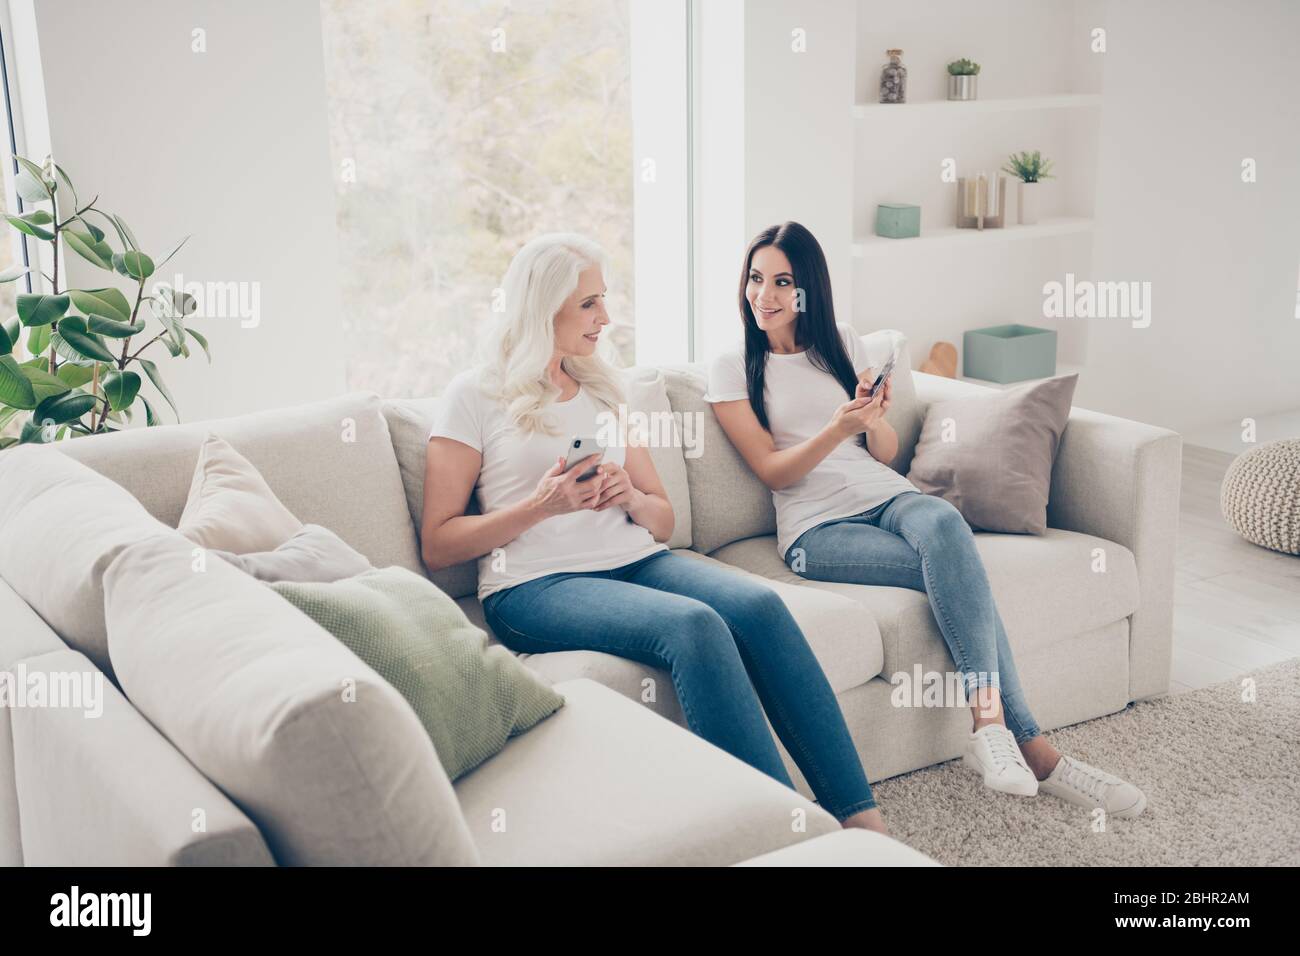 Porträt von zwei schönen attraktiven schönen schönen fröhlichen fröhlichen Frauen sitzen auf Diwan mit digitalen Gerät Web-App verbringen Freizeit Tag Wochenende in weiß Stockfoto